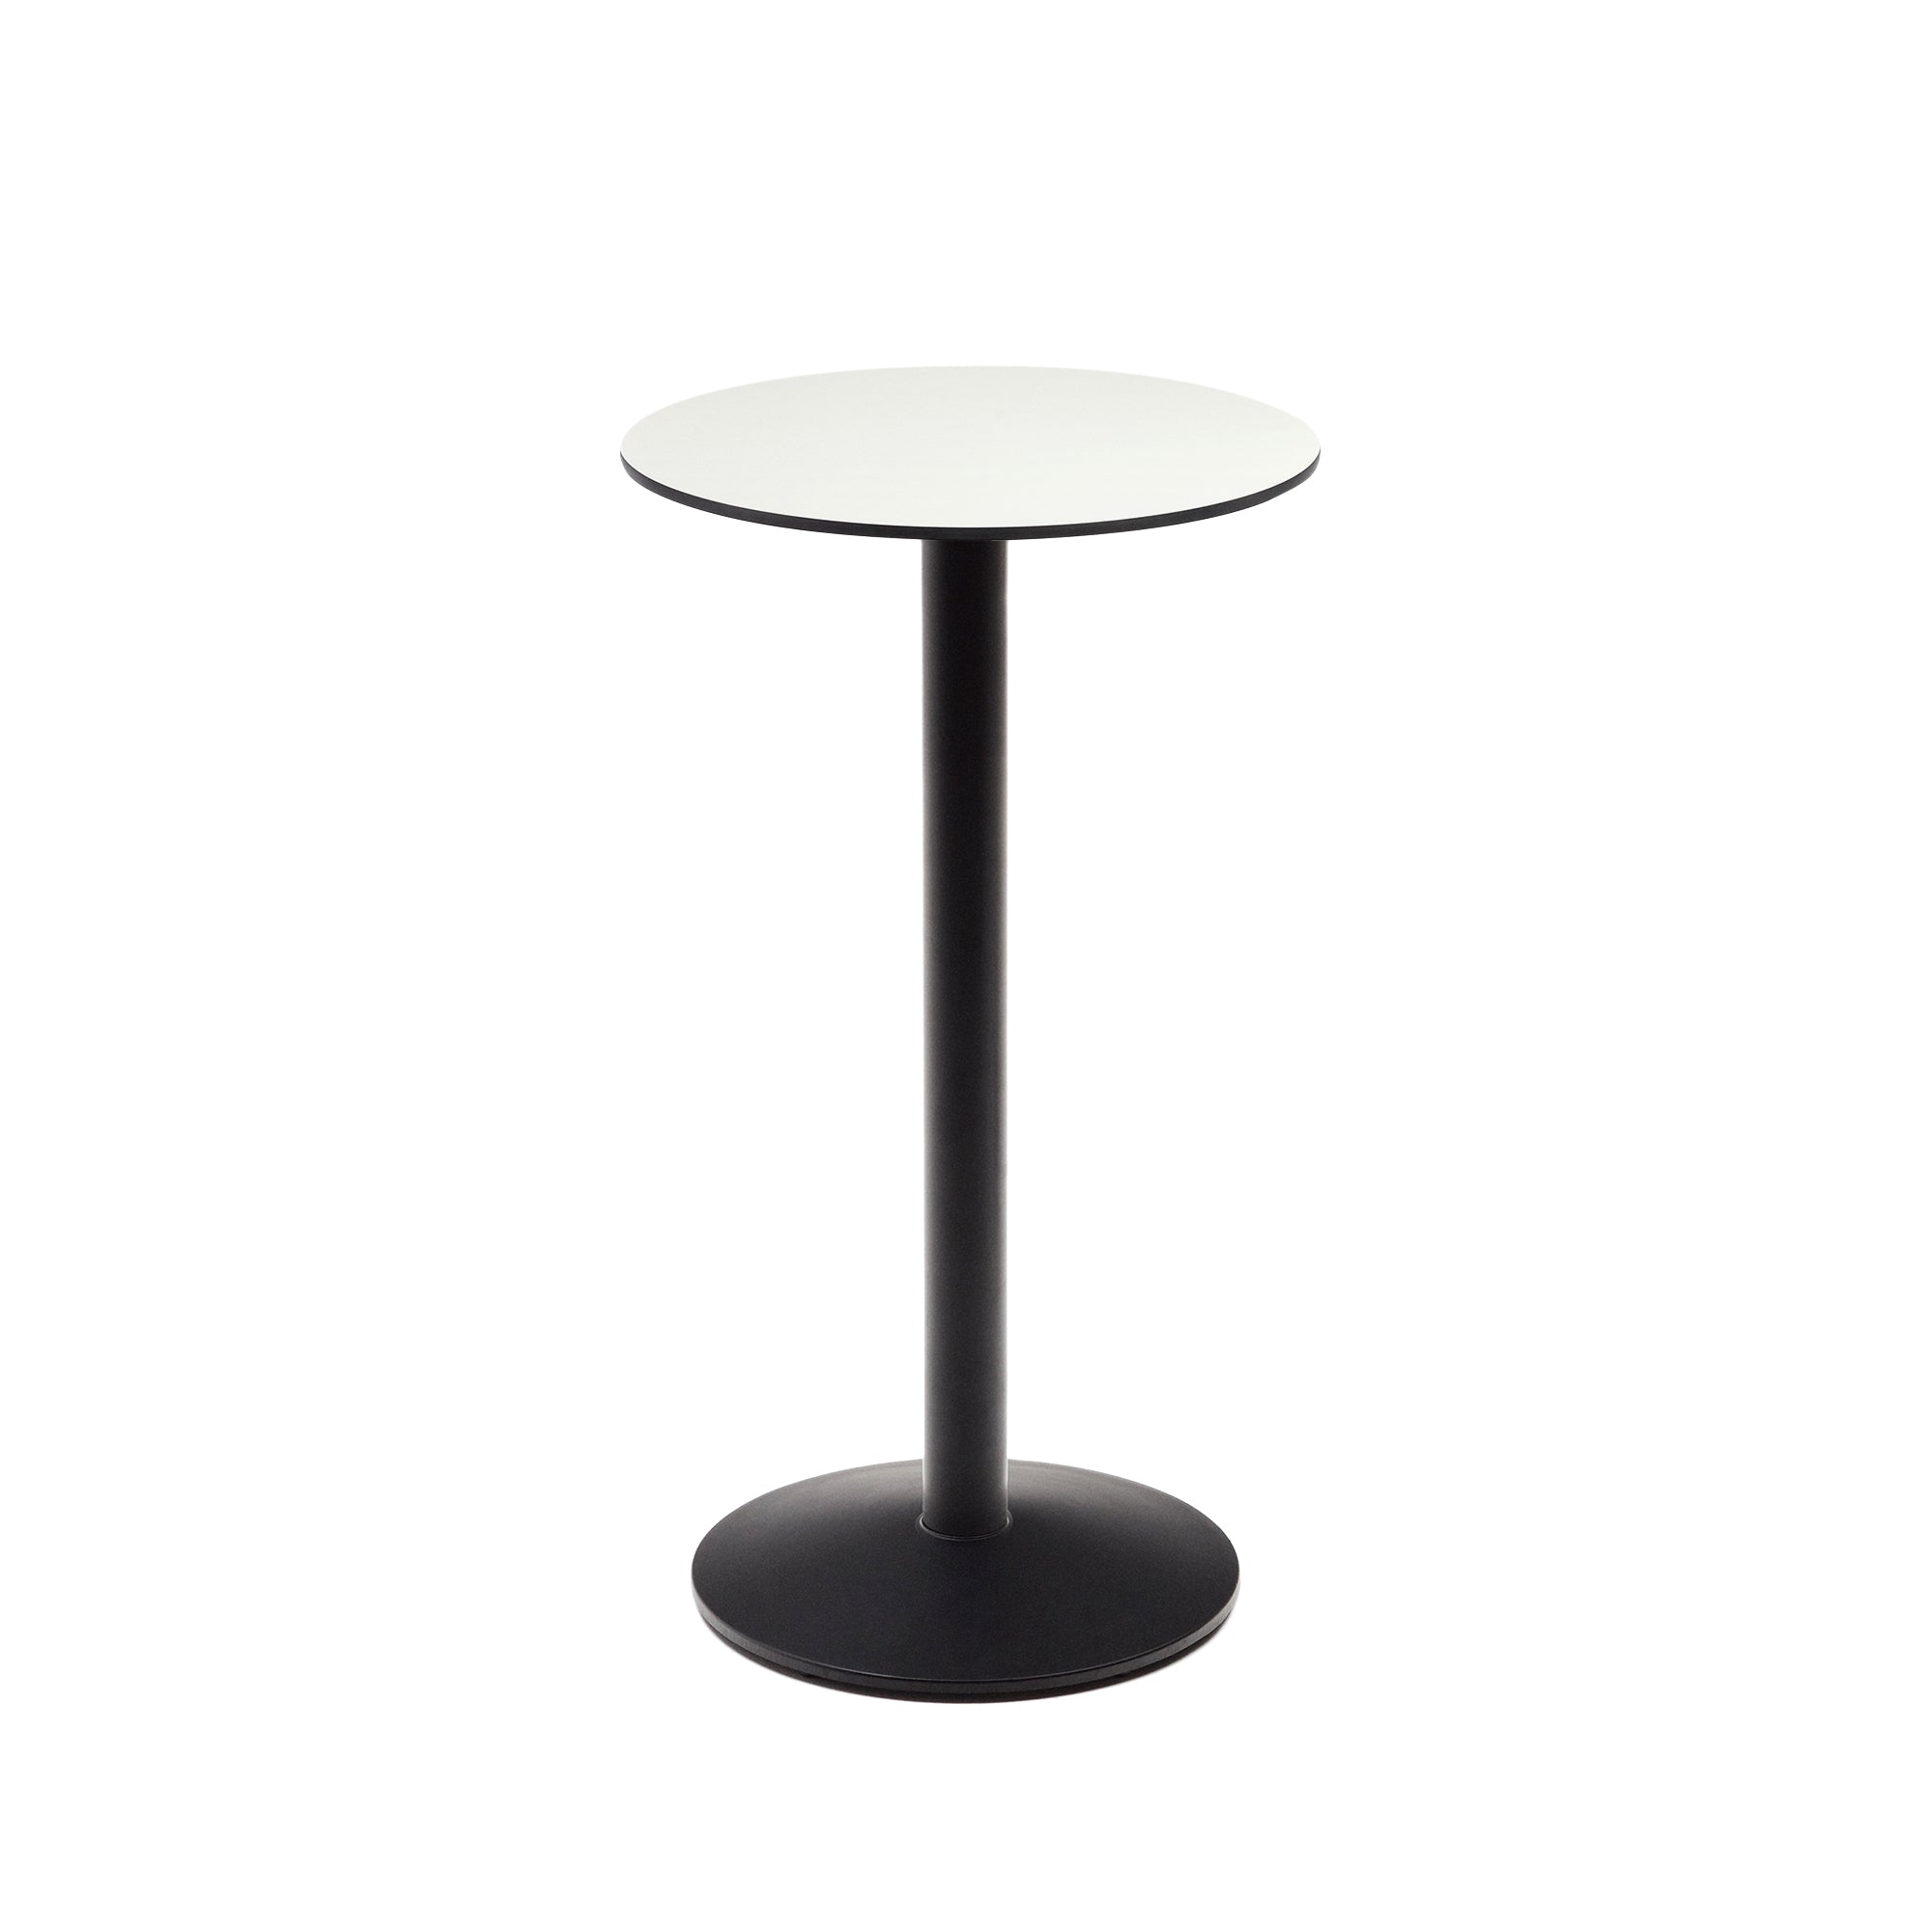 Esilda magas kerek kültéri asztal fehér színben, fekete festett fémlábbal, Ø 60 x 96 cm, kültéri kisasztal, fehér színben.